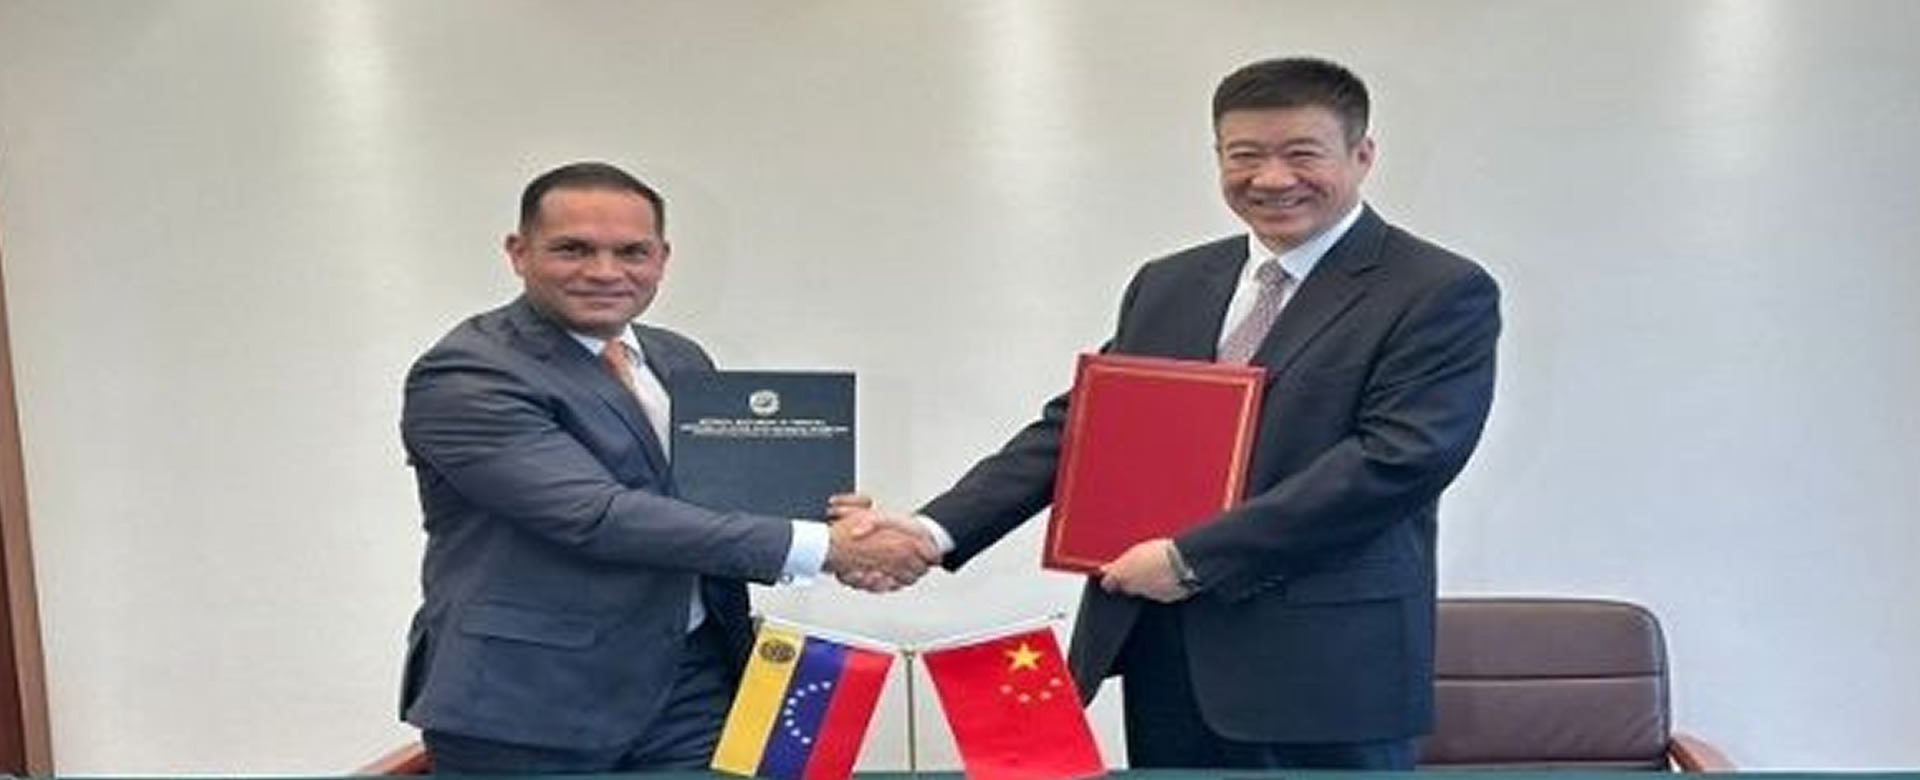 Venezuela vuelos comerciales China